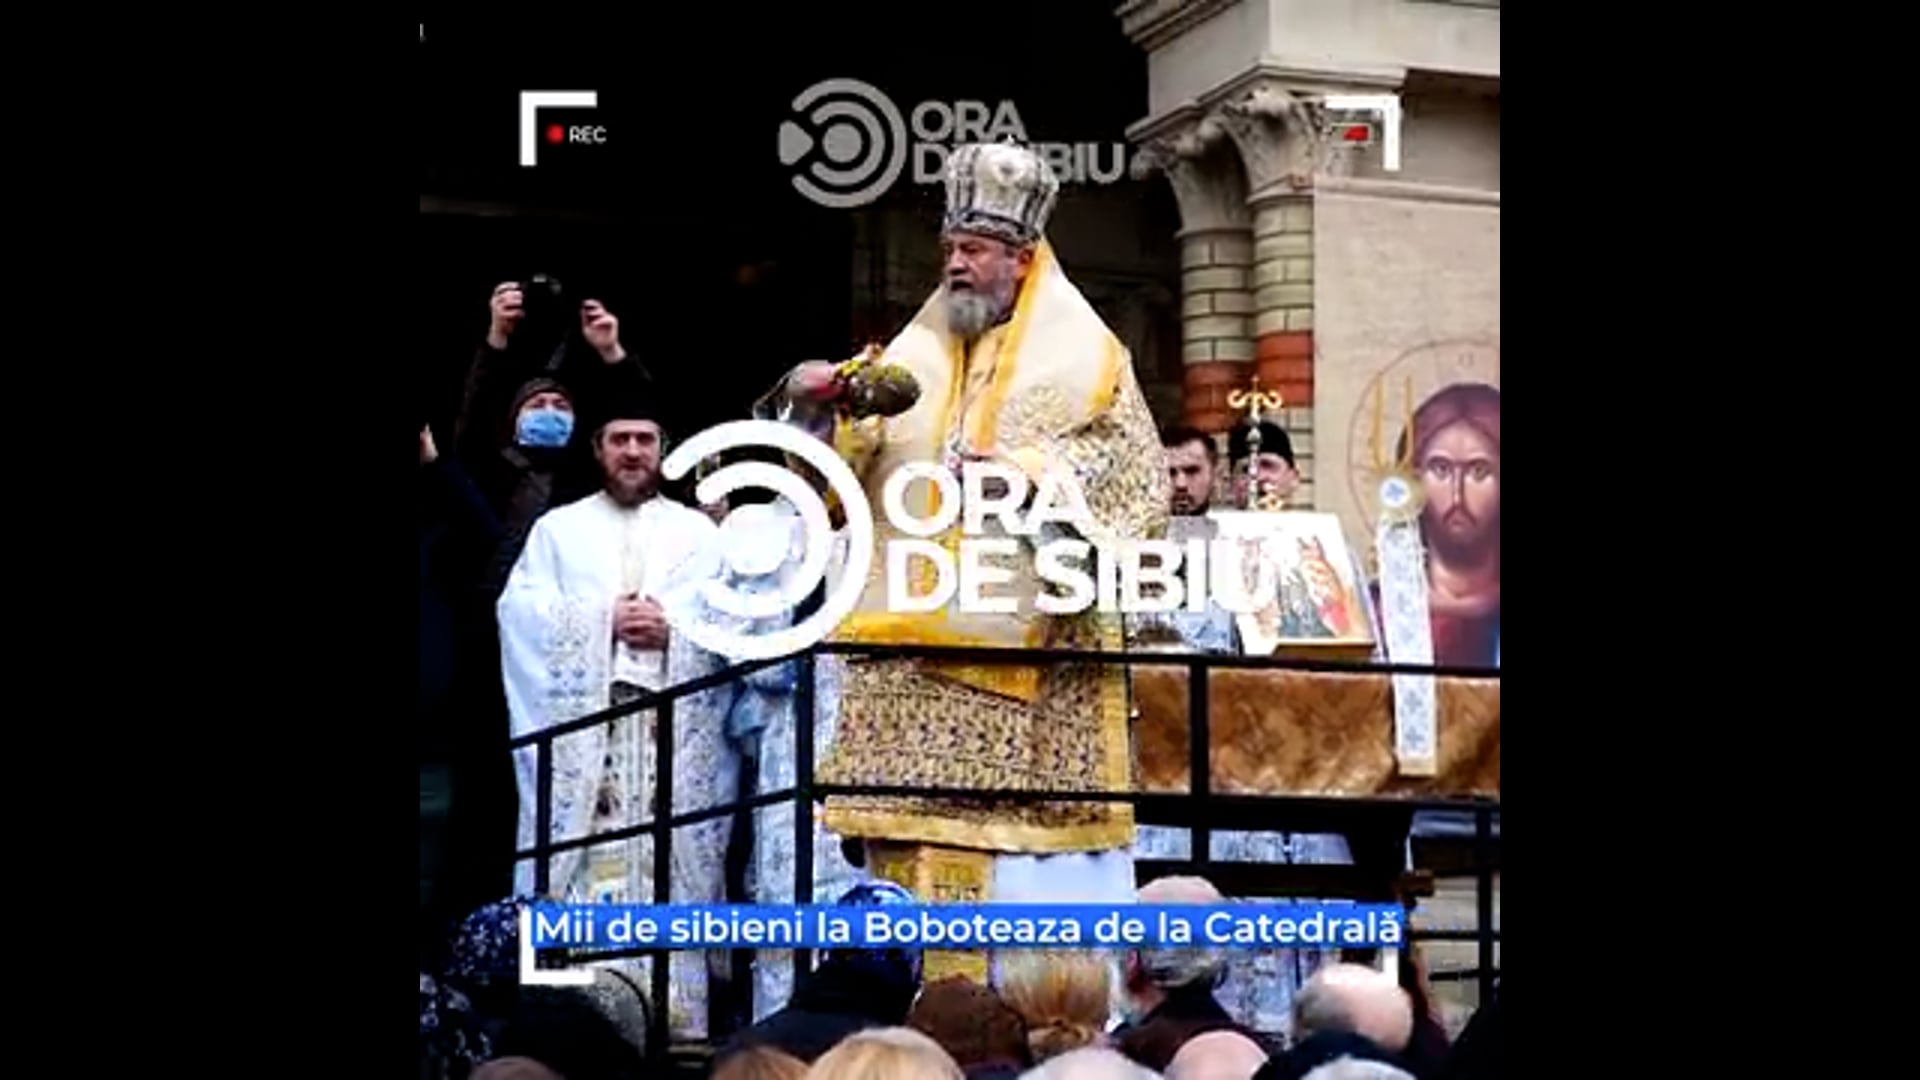 Mii de sibieni la Boboteaza de la Catedrală - ”Luăm aghiasmă pentru sănătate și bunăstarea familiei”